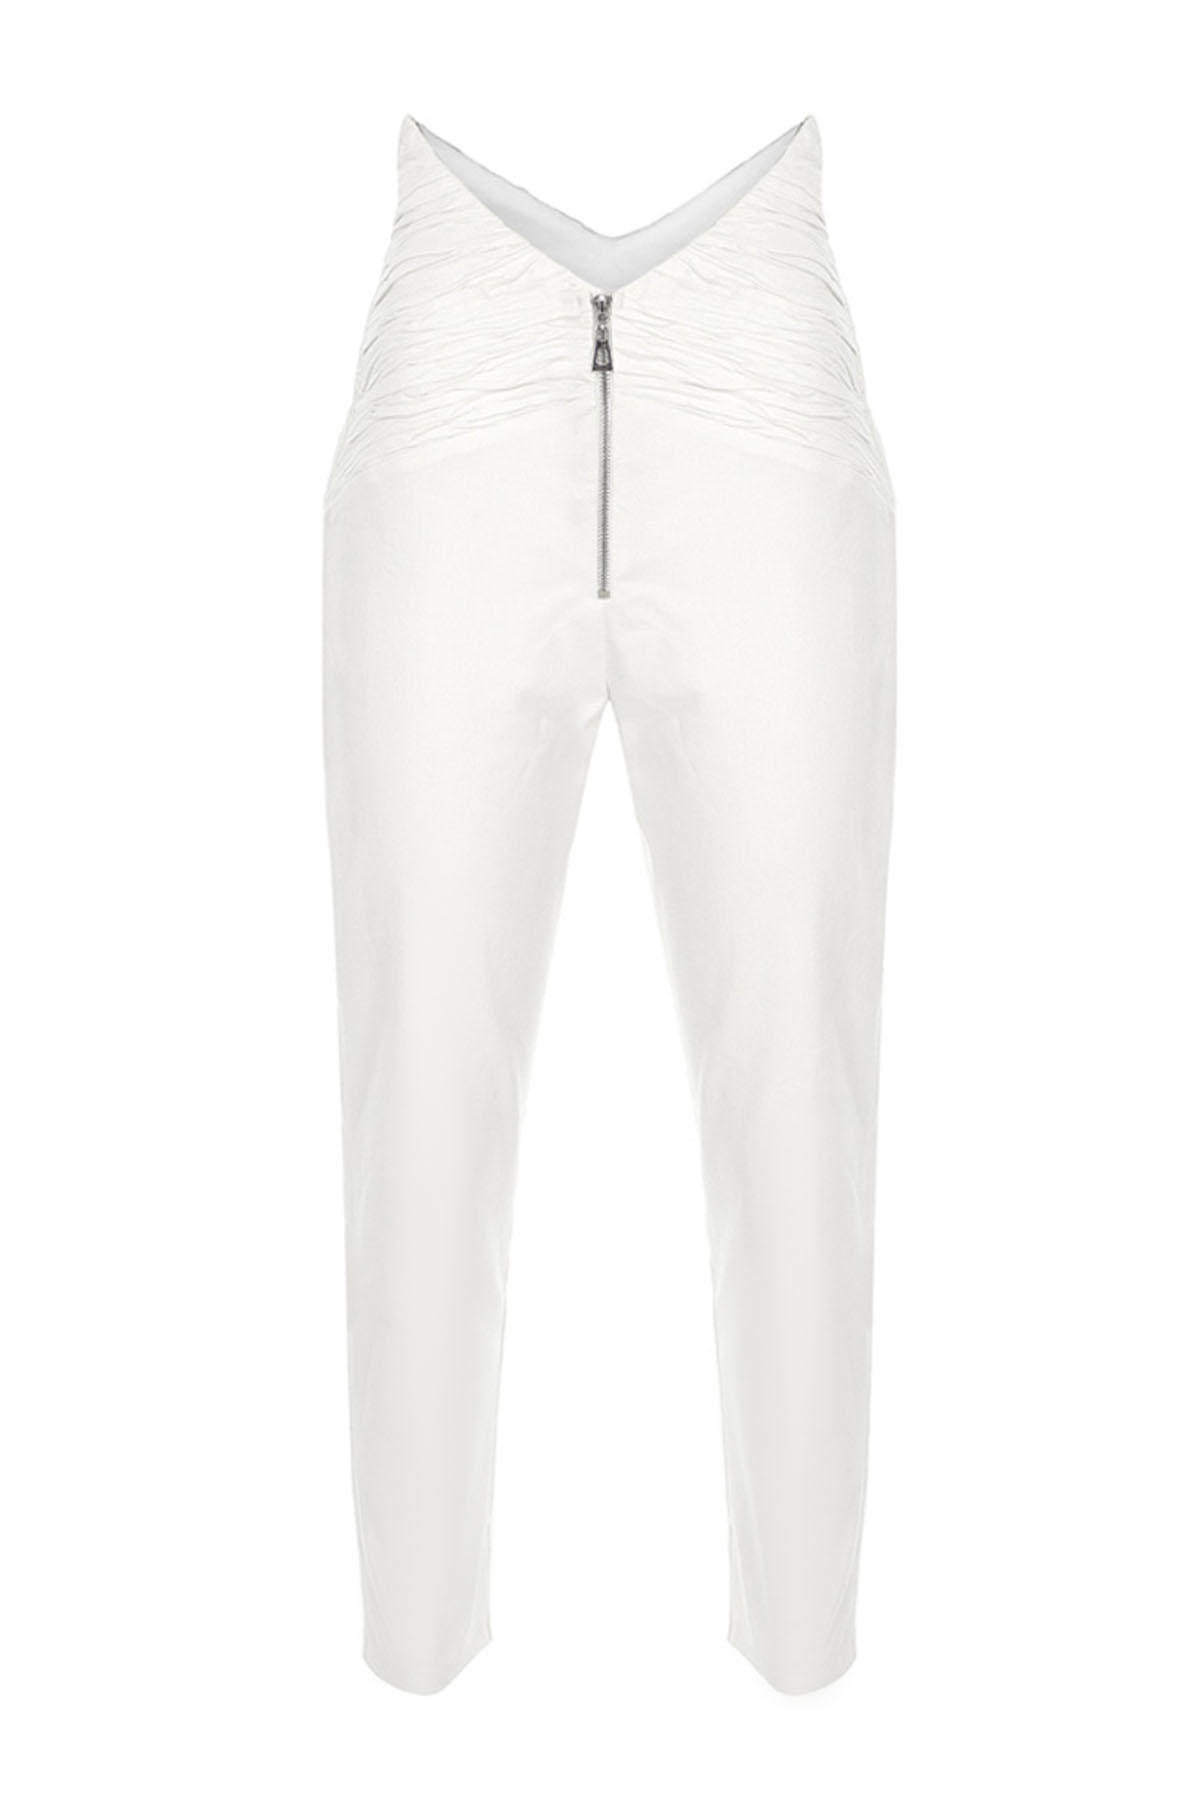 0002_beyaz-pantalon-fotograf-cekimi Tekstil Fotoğraf Çekimi